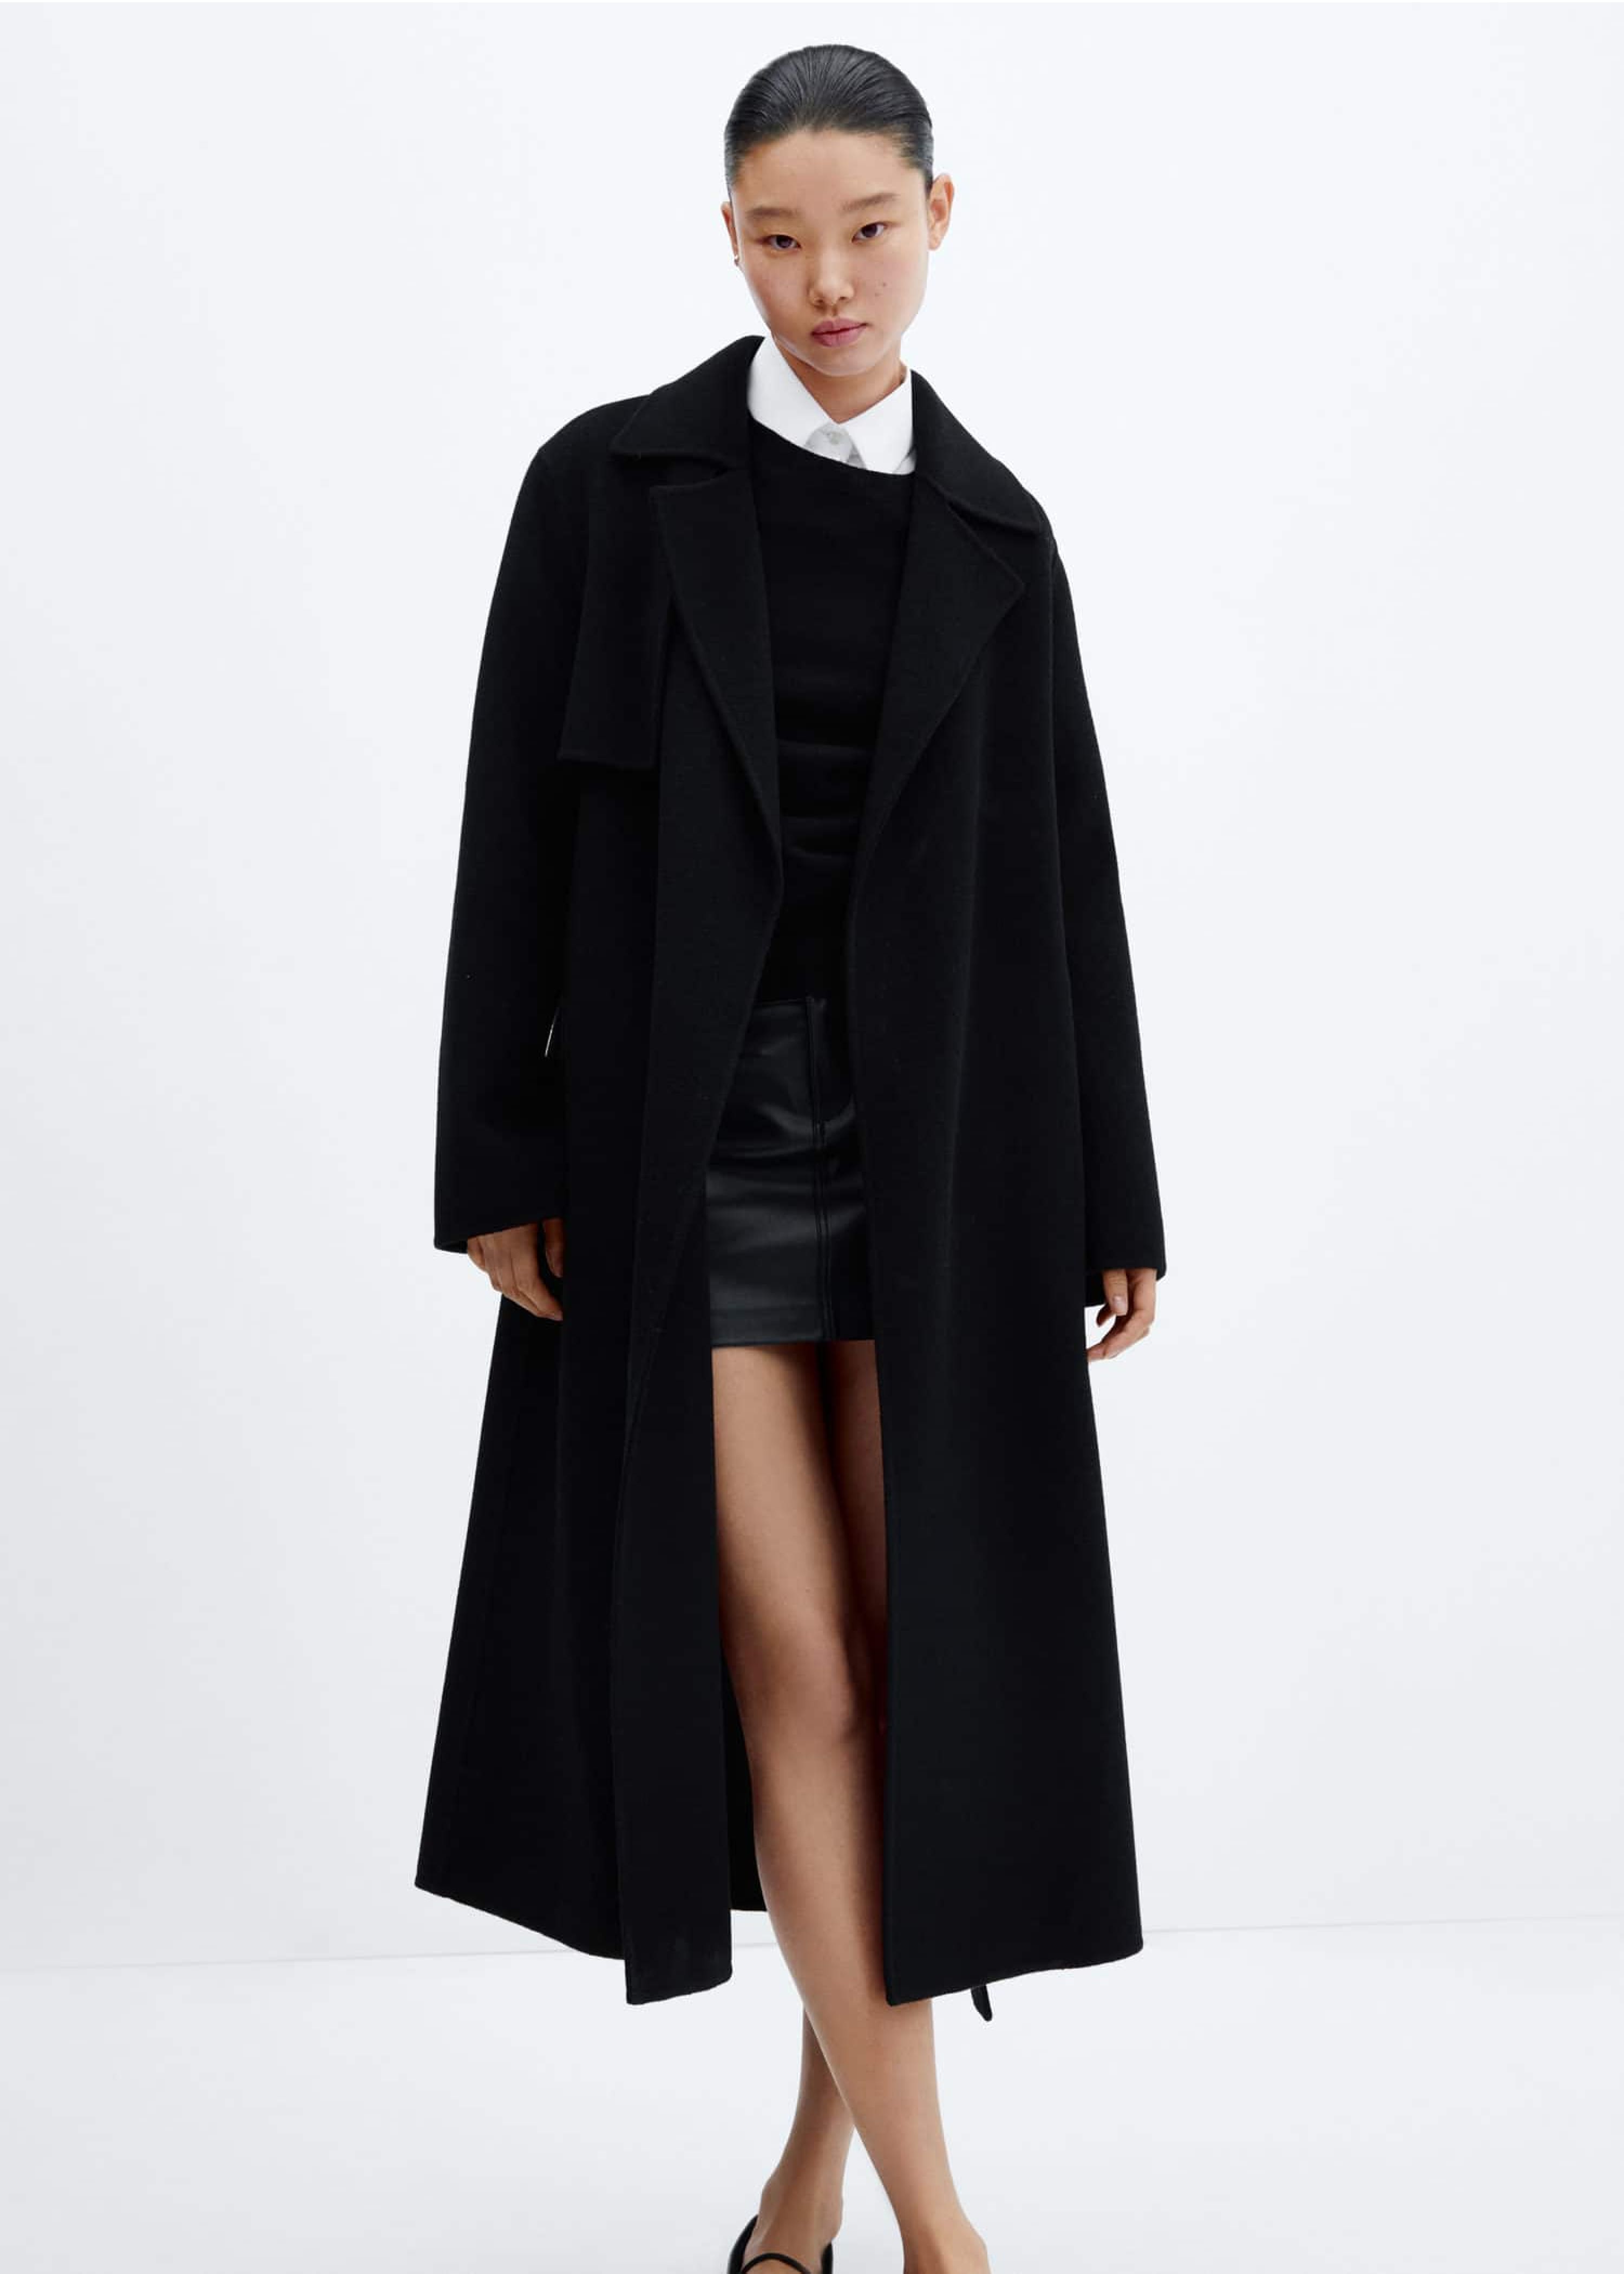 Mujer vestida con un vestido corto y un abrigo largo negro